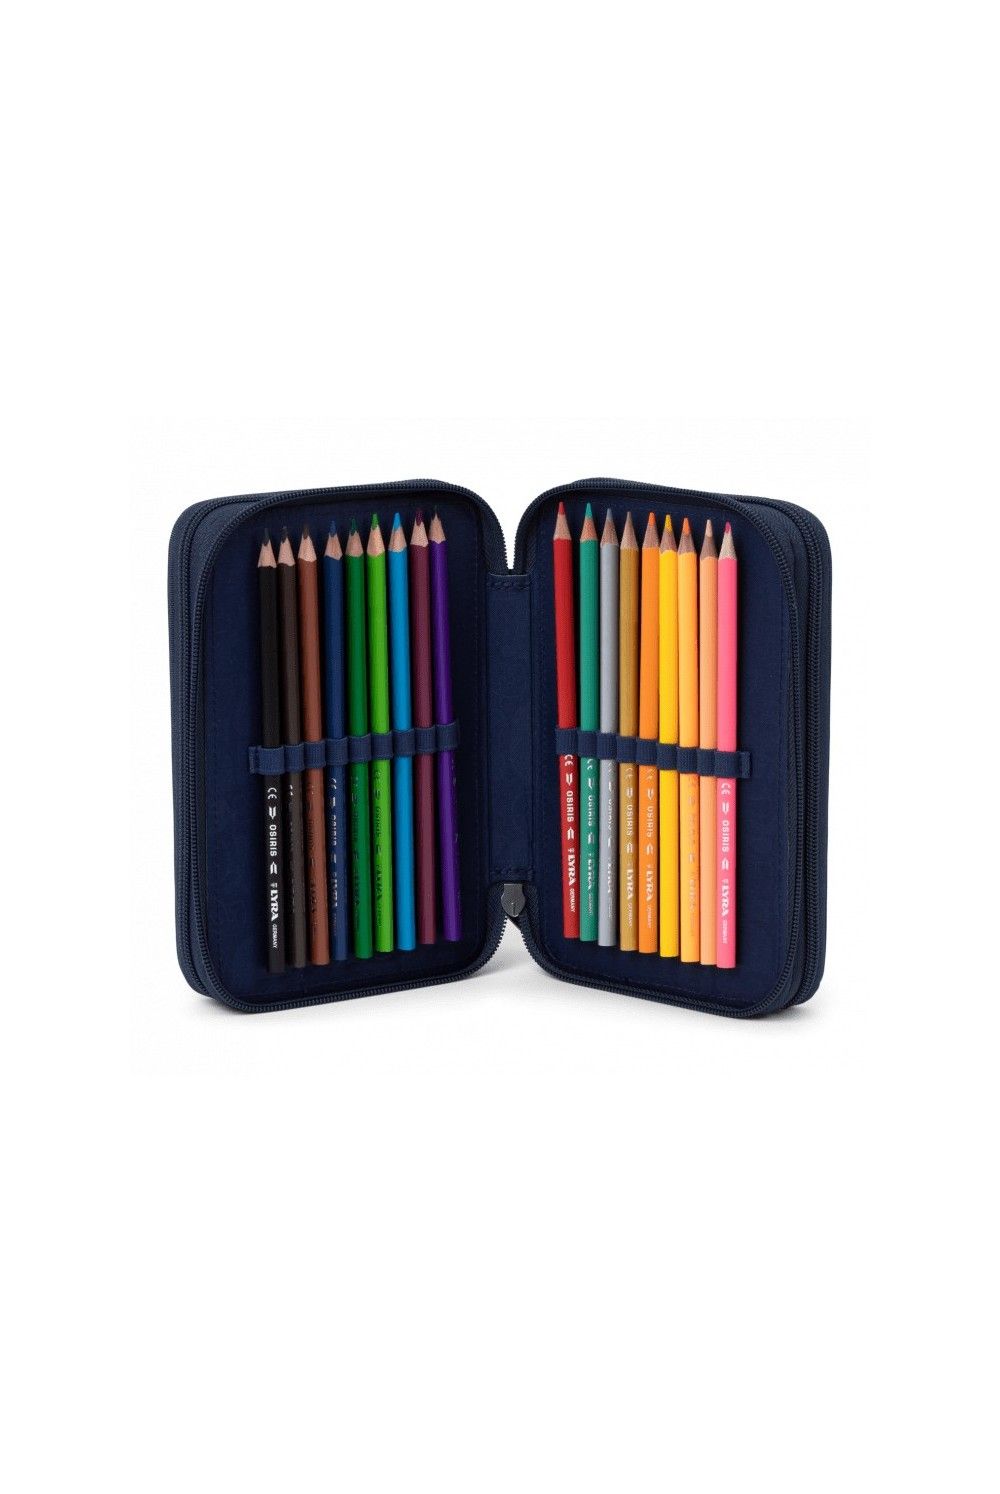 Ergobag maxi pencil case Schubi DuBär